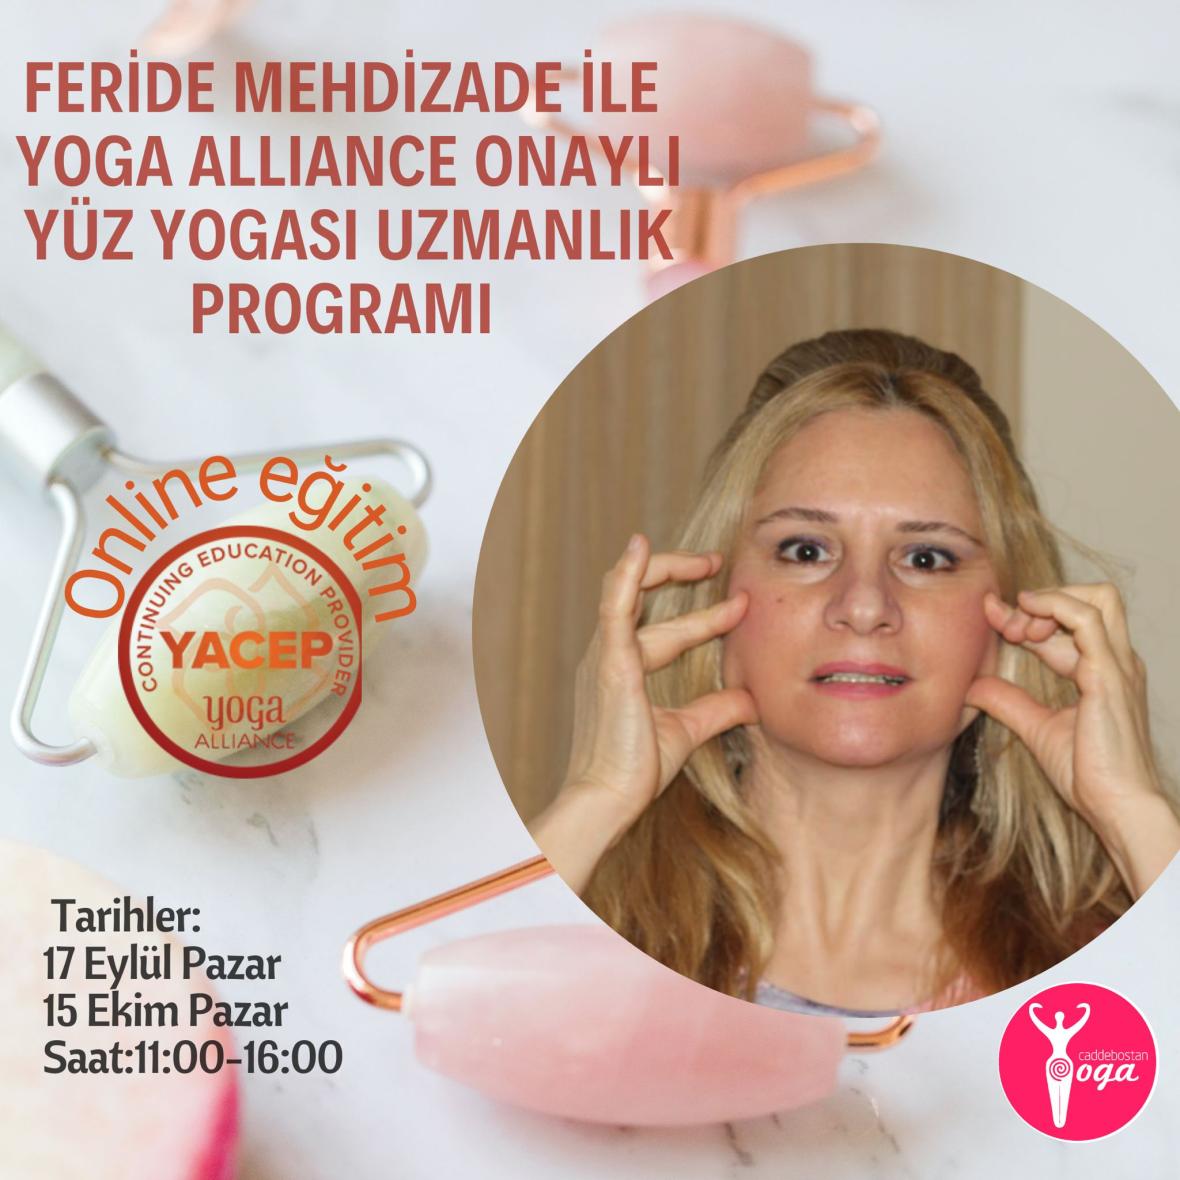 Feride Mehdizade ile Yoga Alliance onaylı Yüz Yogası Uzmanlık Programı -  Eylül ve Ekim dönemi